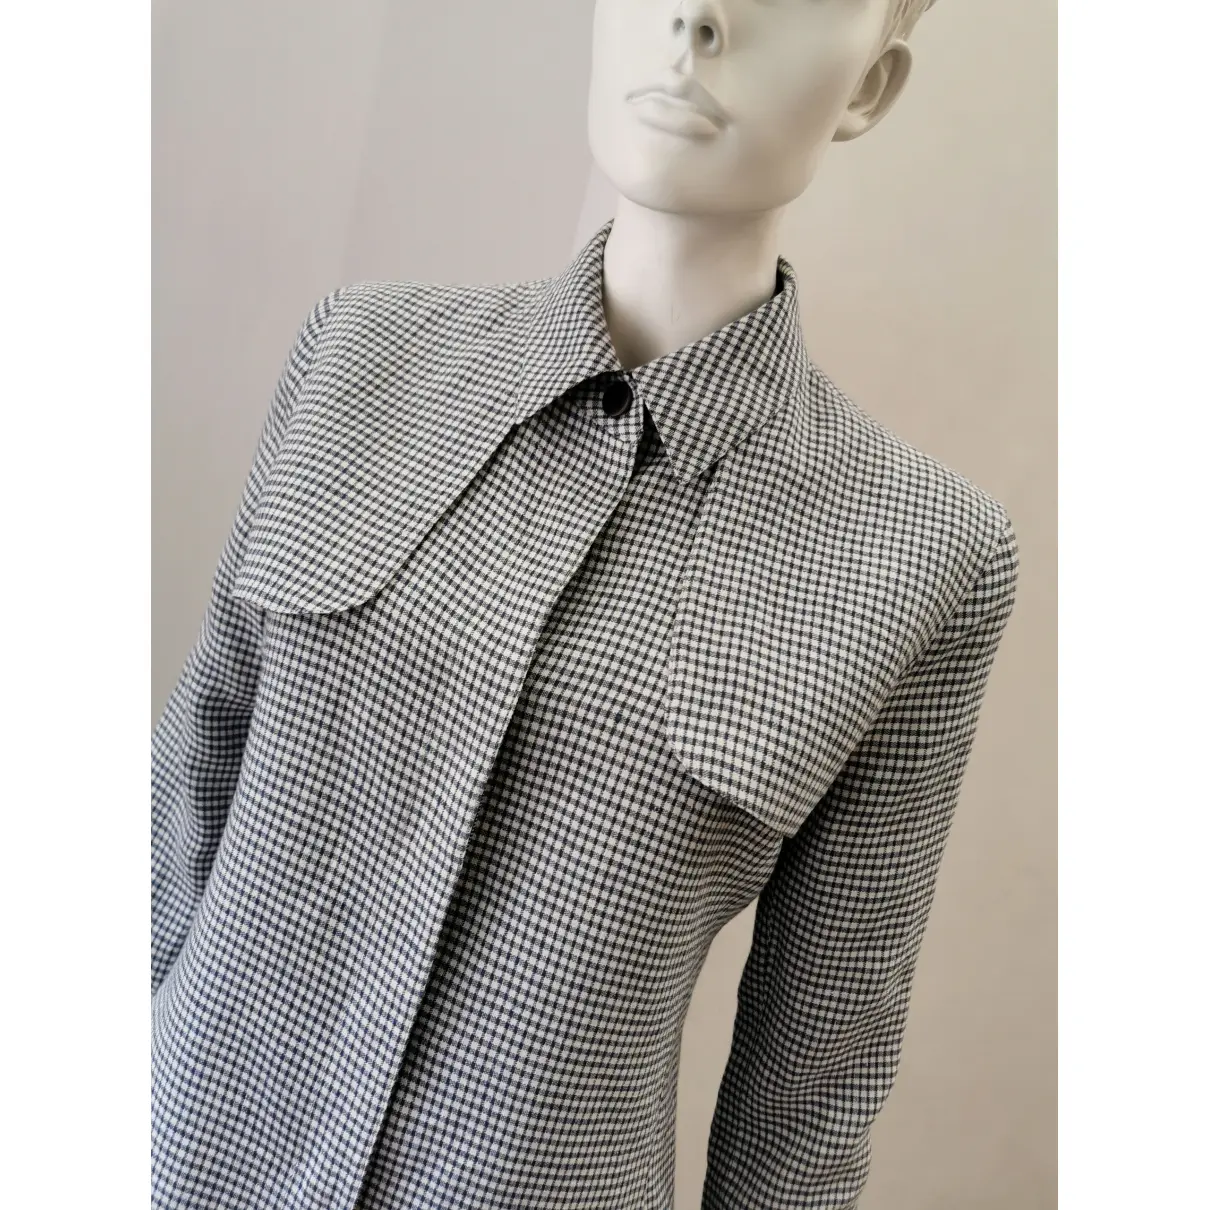 Buy Armani Collezioni Linen blazer online